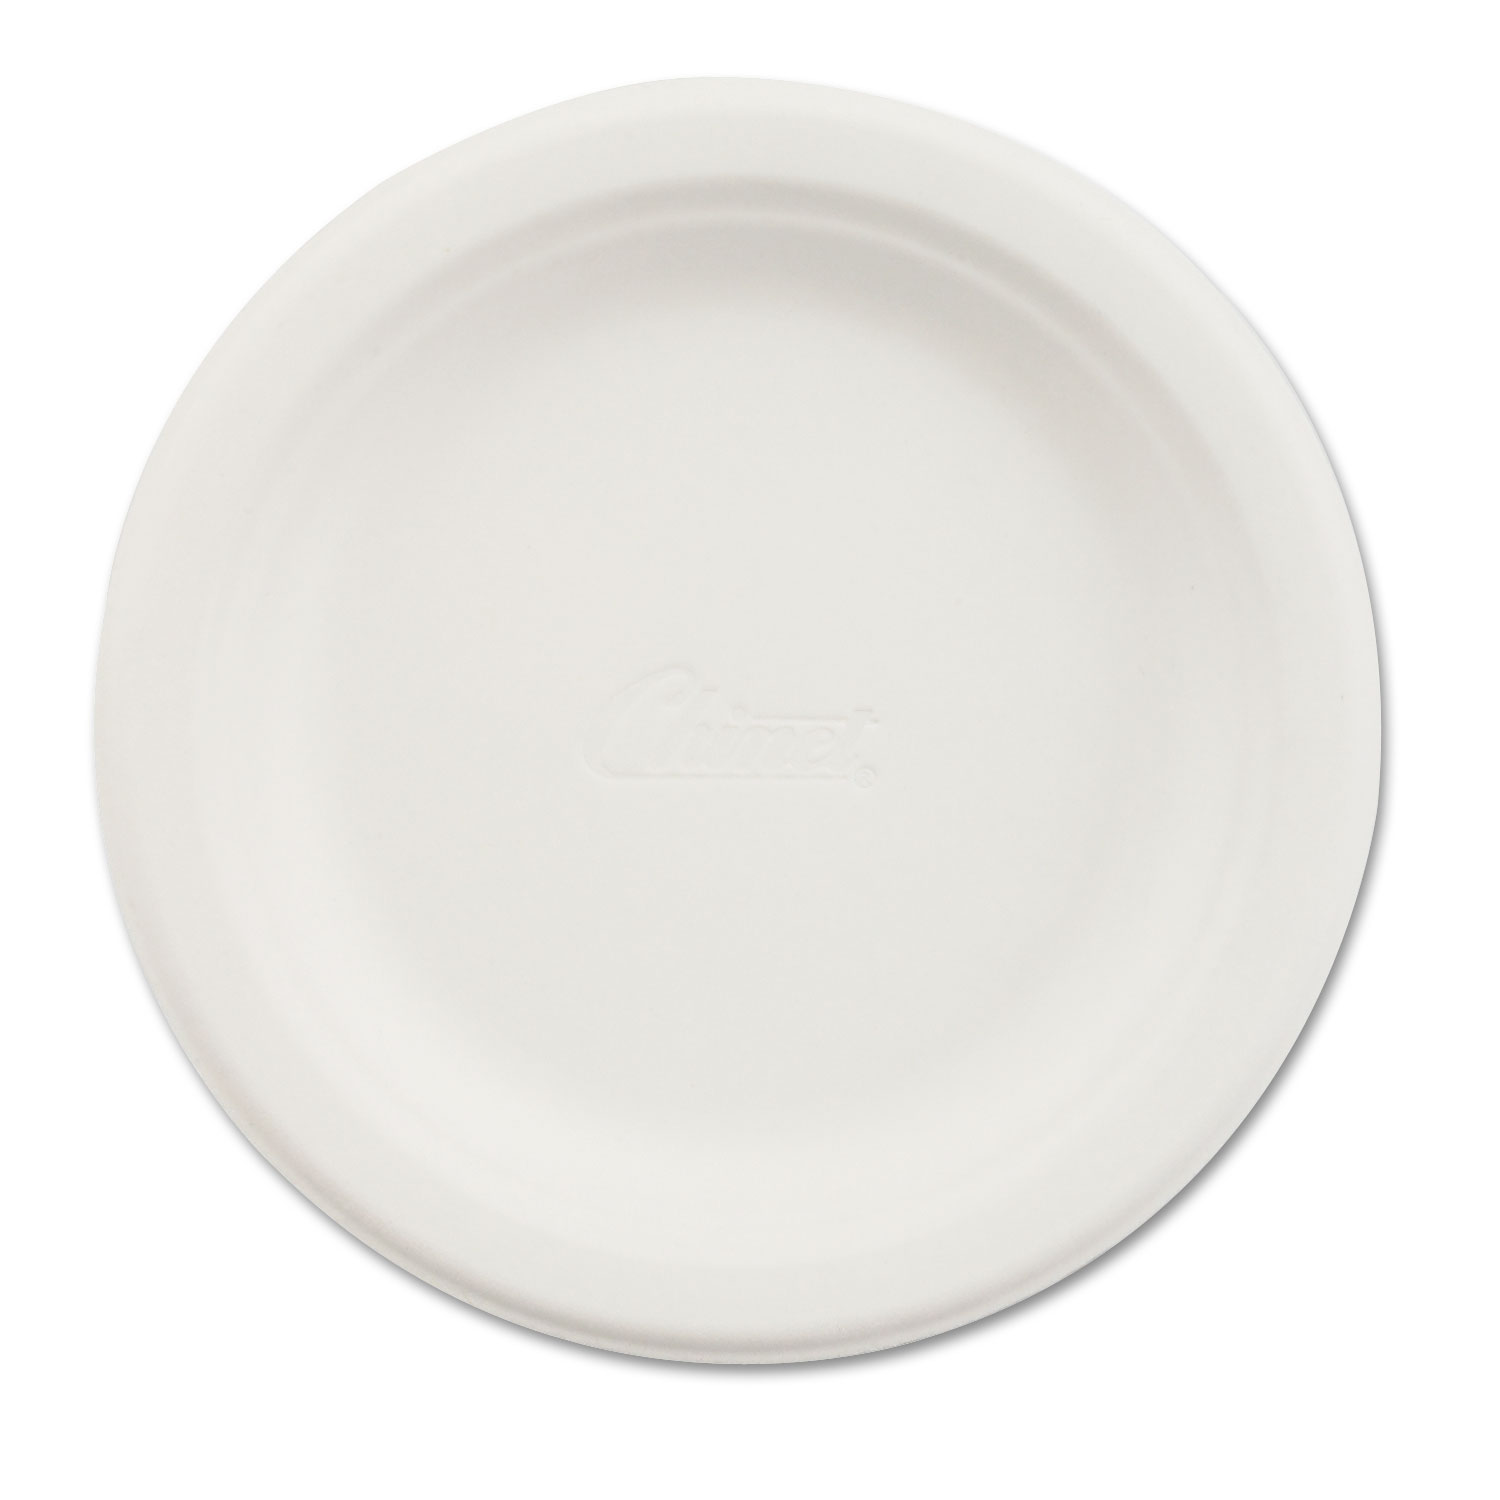  Chinet 21225 Paper Dinnerware, Plate, 6 dia, White, 125/Pack (HUH21225PK) 